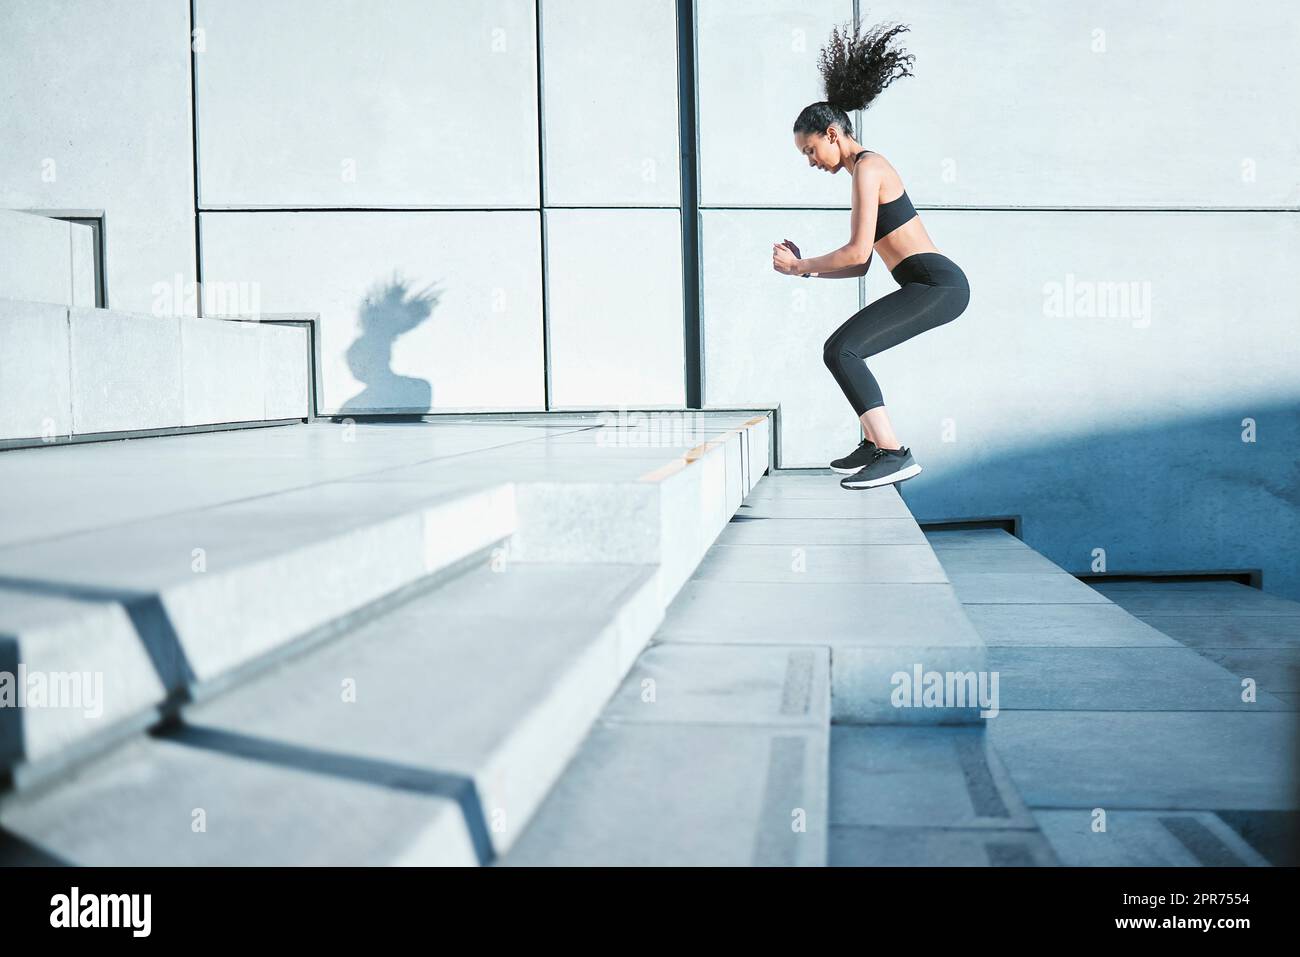 En faisant un pas à la fois. Photo en longueur d'une jeune athlète féminine attirante s'exerçant à l'extérieur de la ville. Banque D'Images